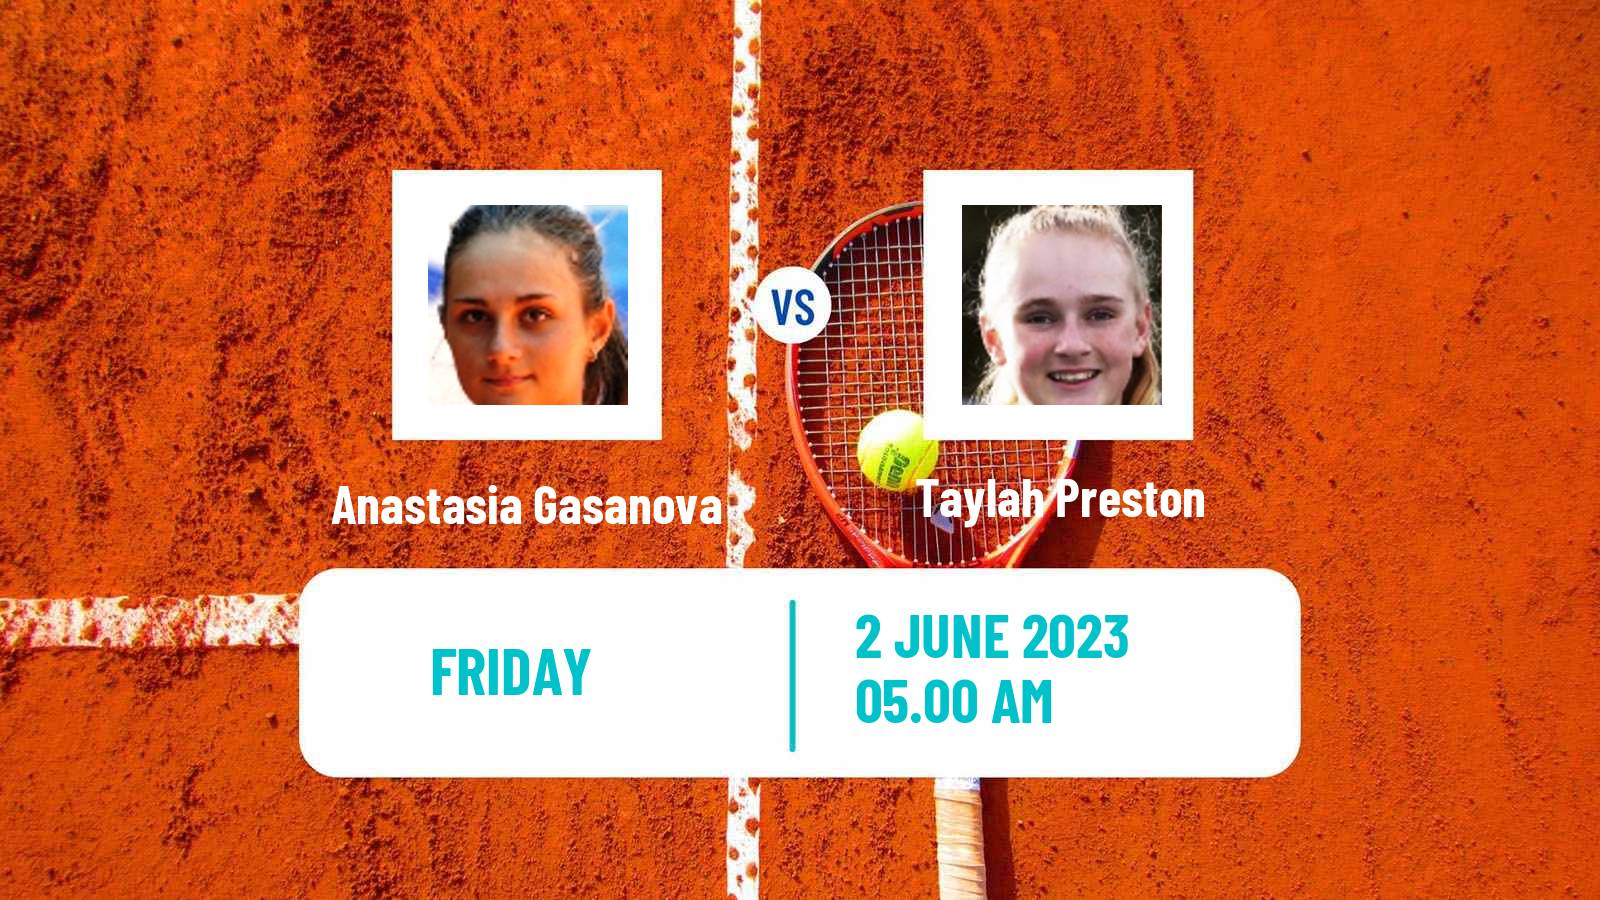 Tennis ITF W25 La Marsa Women Anastasia Gasanova - Taylah Preston